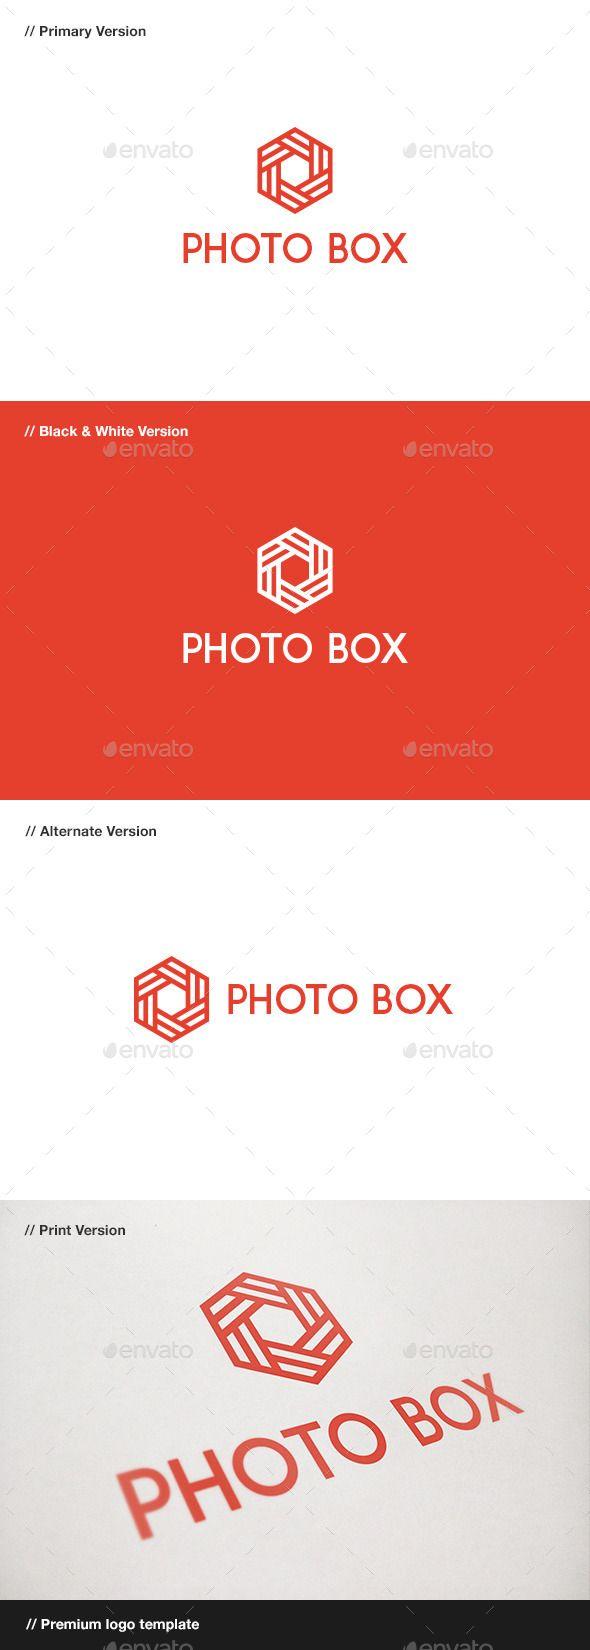 Hexagon Box Logo - Photo Box Logo — Vector EPS #hexagon #web • Available here → https ...